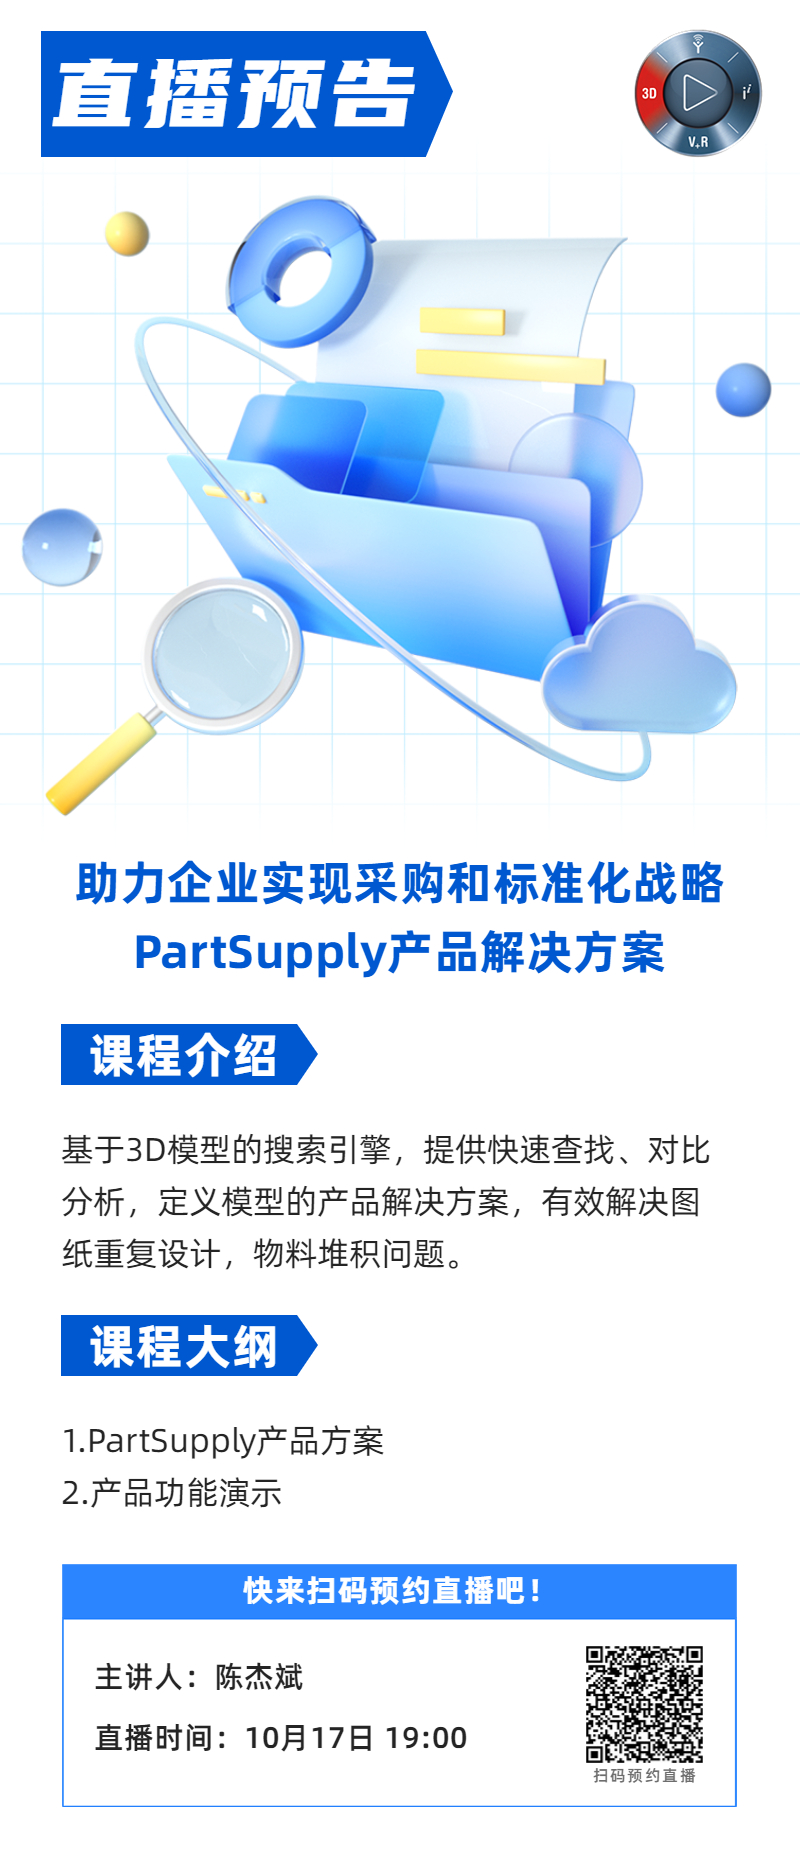 线上活动丨助力企业实现采购和标准化战略-PartSupply产品解决方案